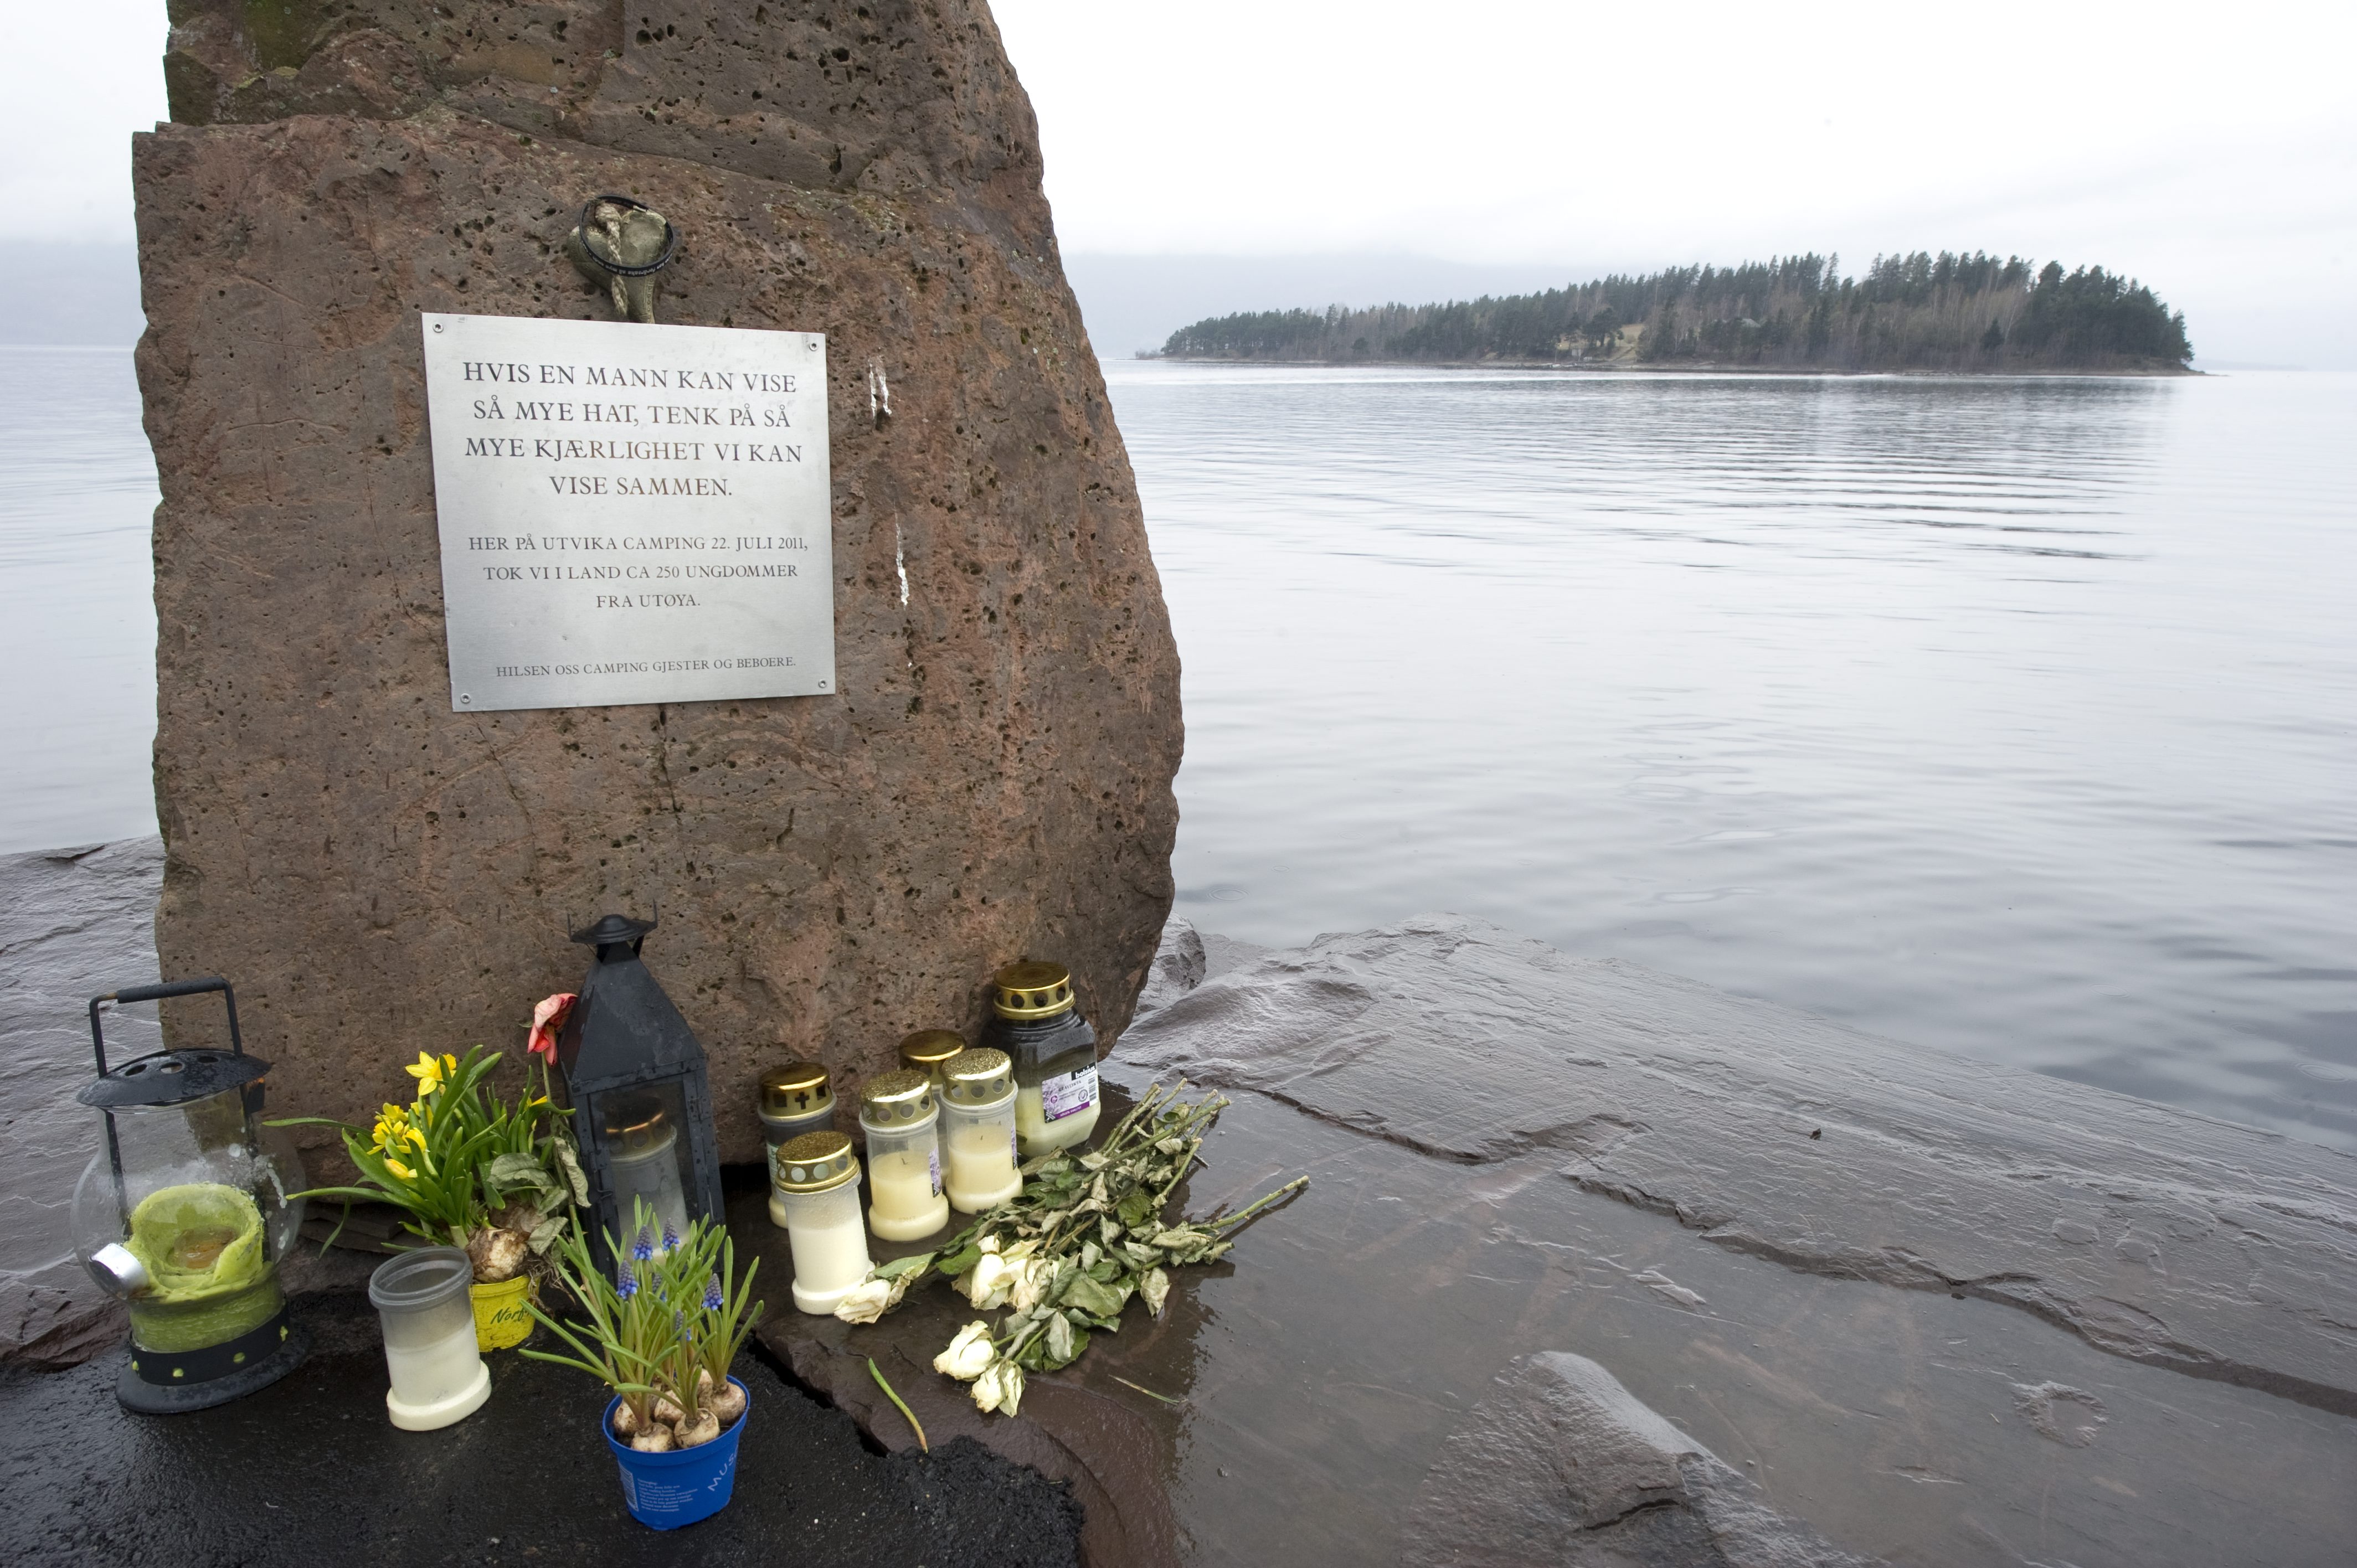 69 personer sköts ihjäl på Utöya. Kirsten Vesterhus son var en av offren.